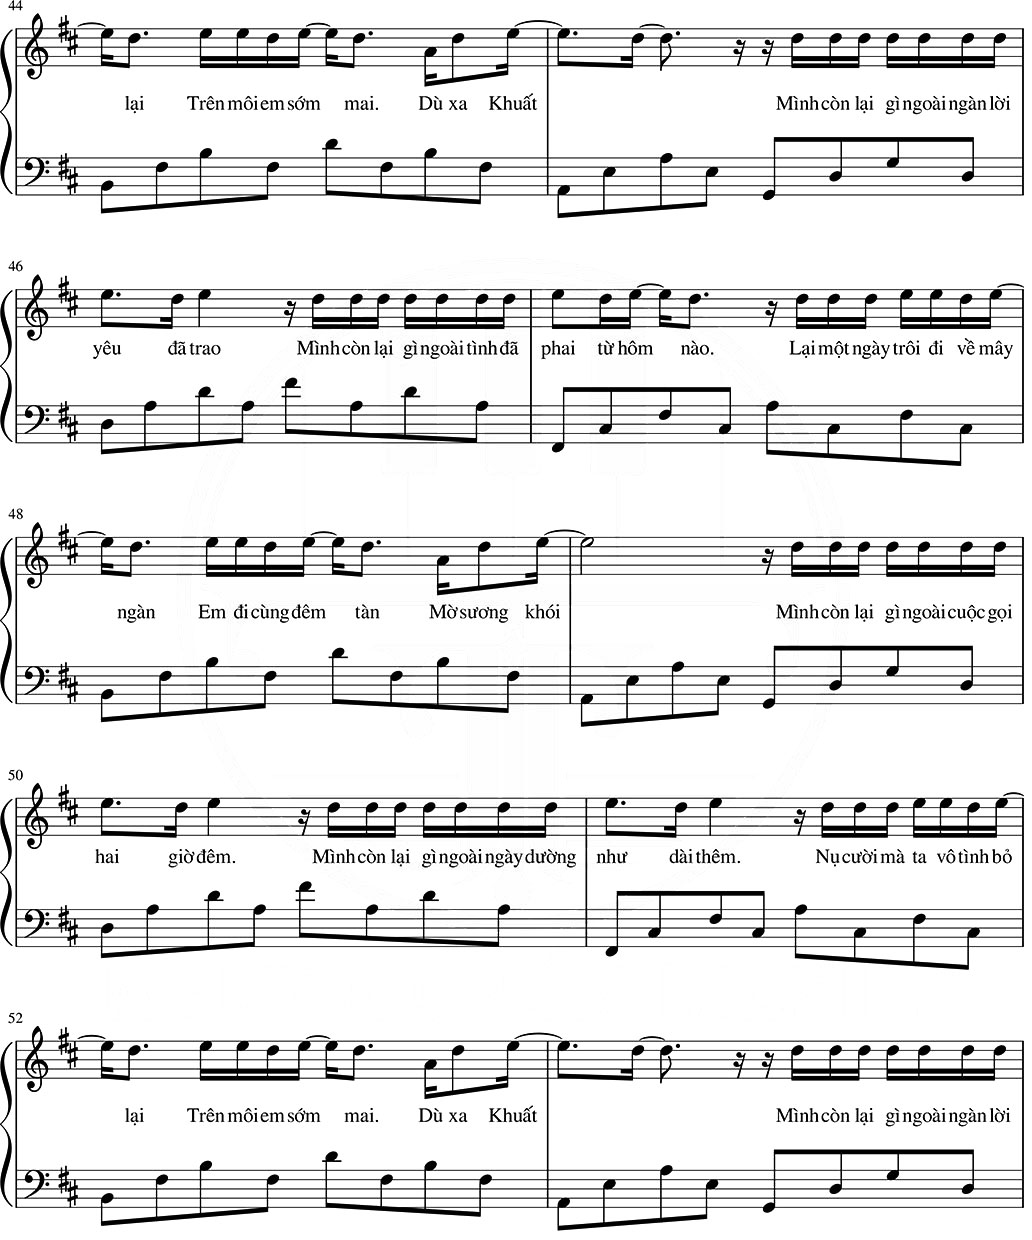 mascara-sheet-piano-1-piano-fingers